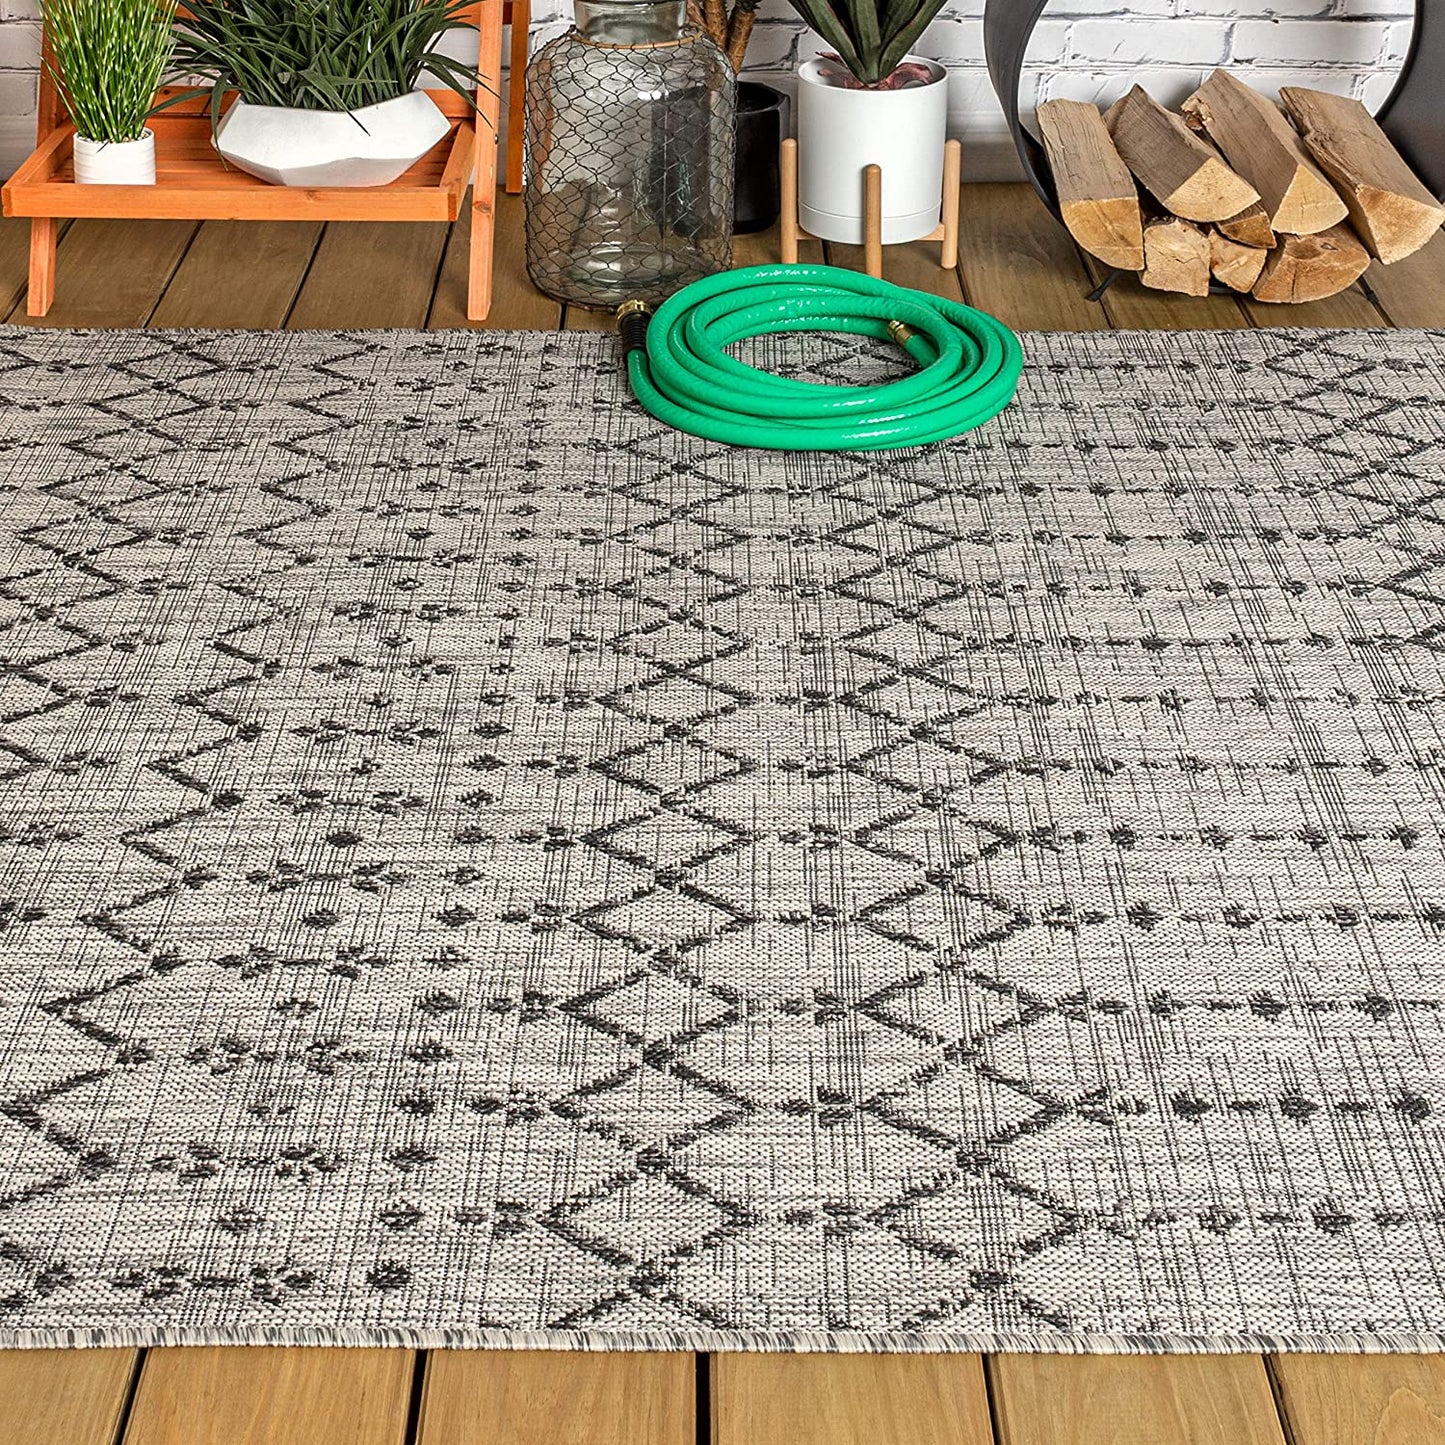 Moroccan Geometric Textured Weave Indoor/Outdoor Gray/Black